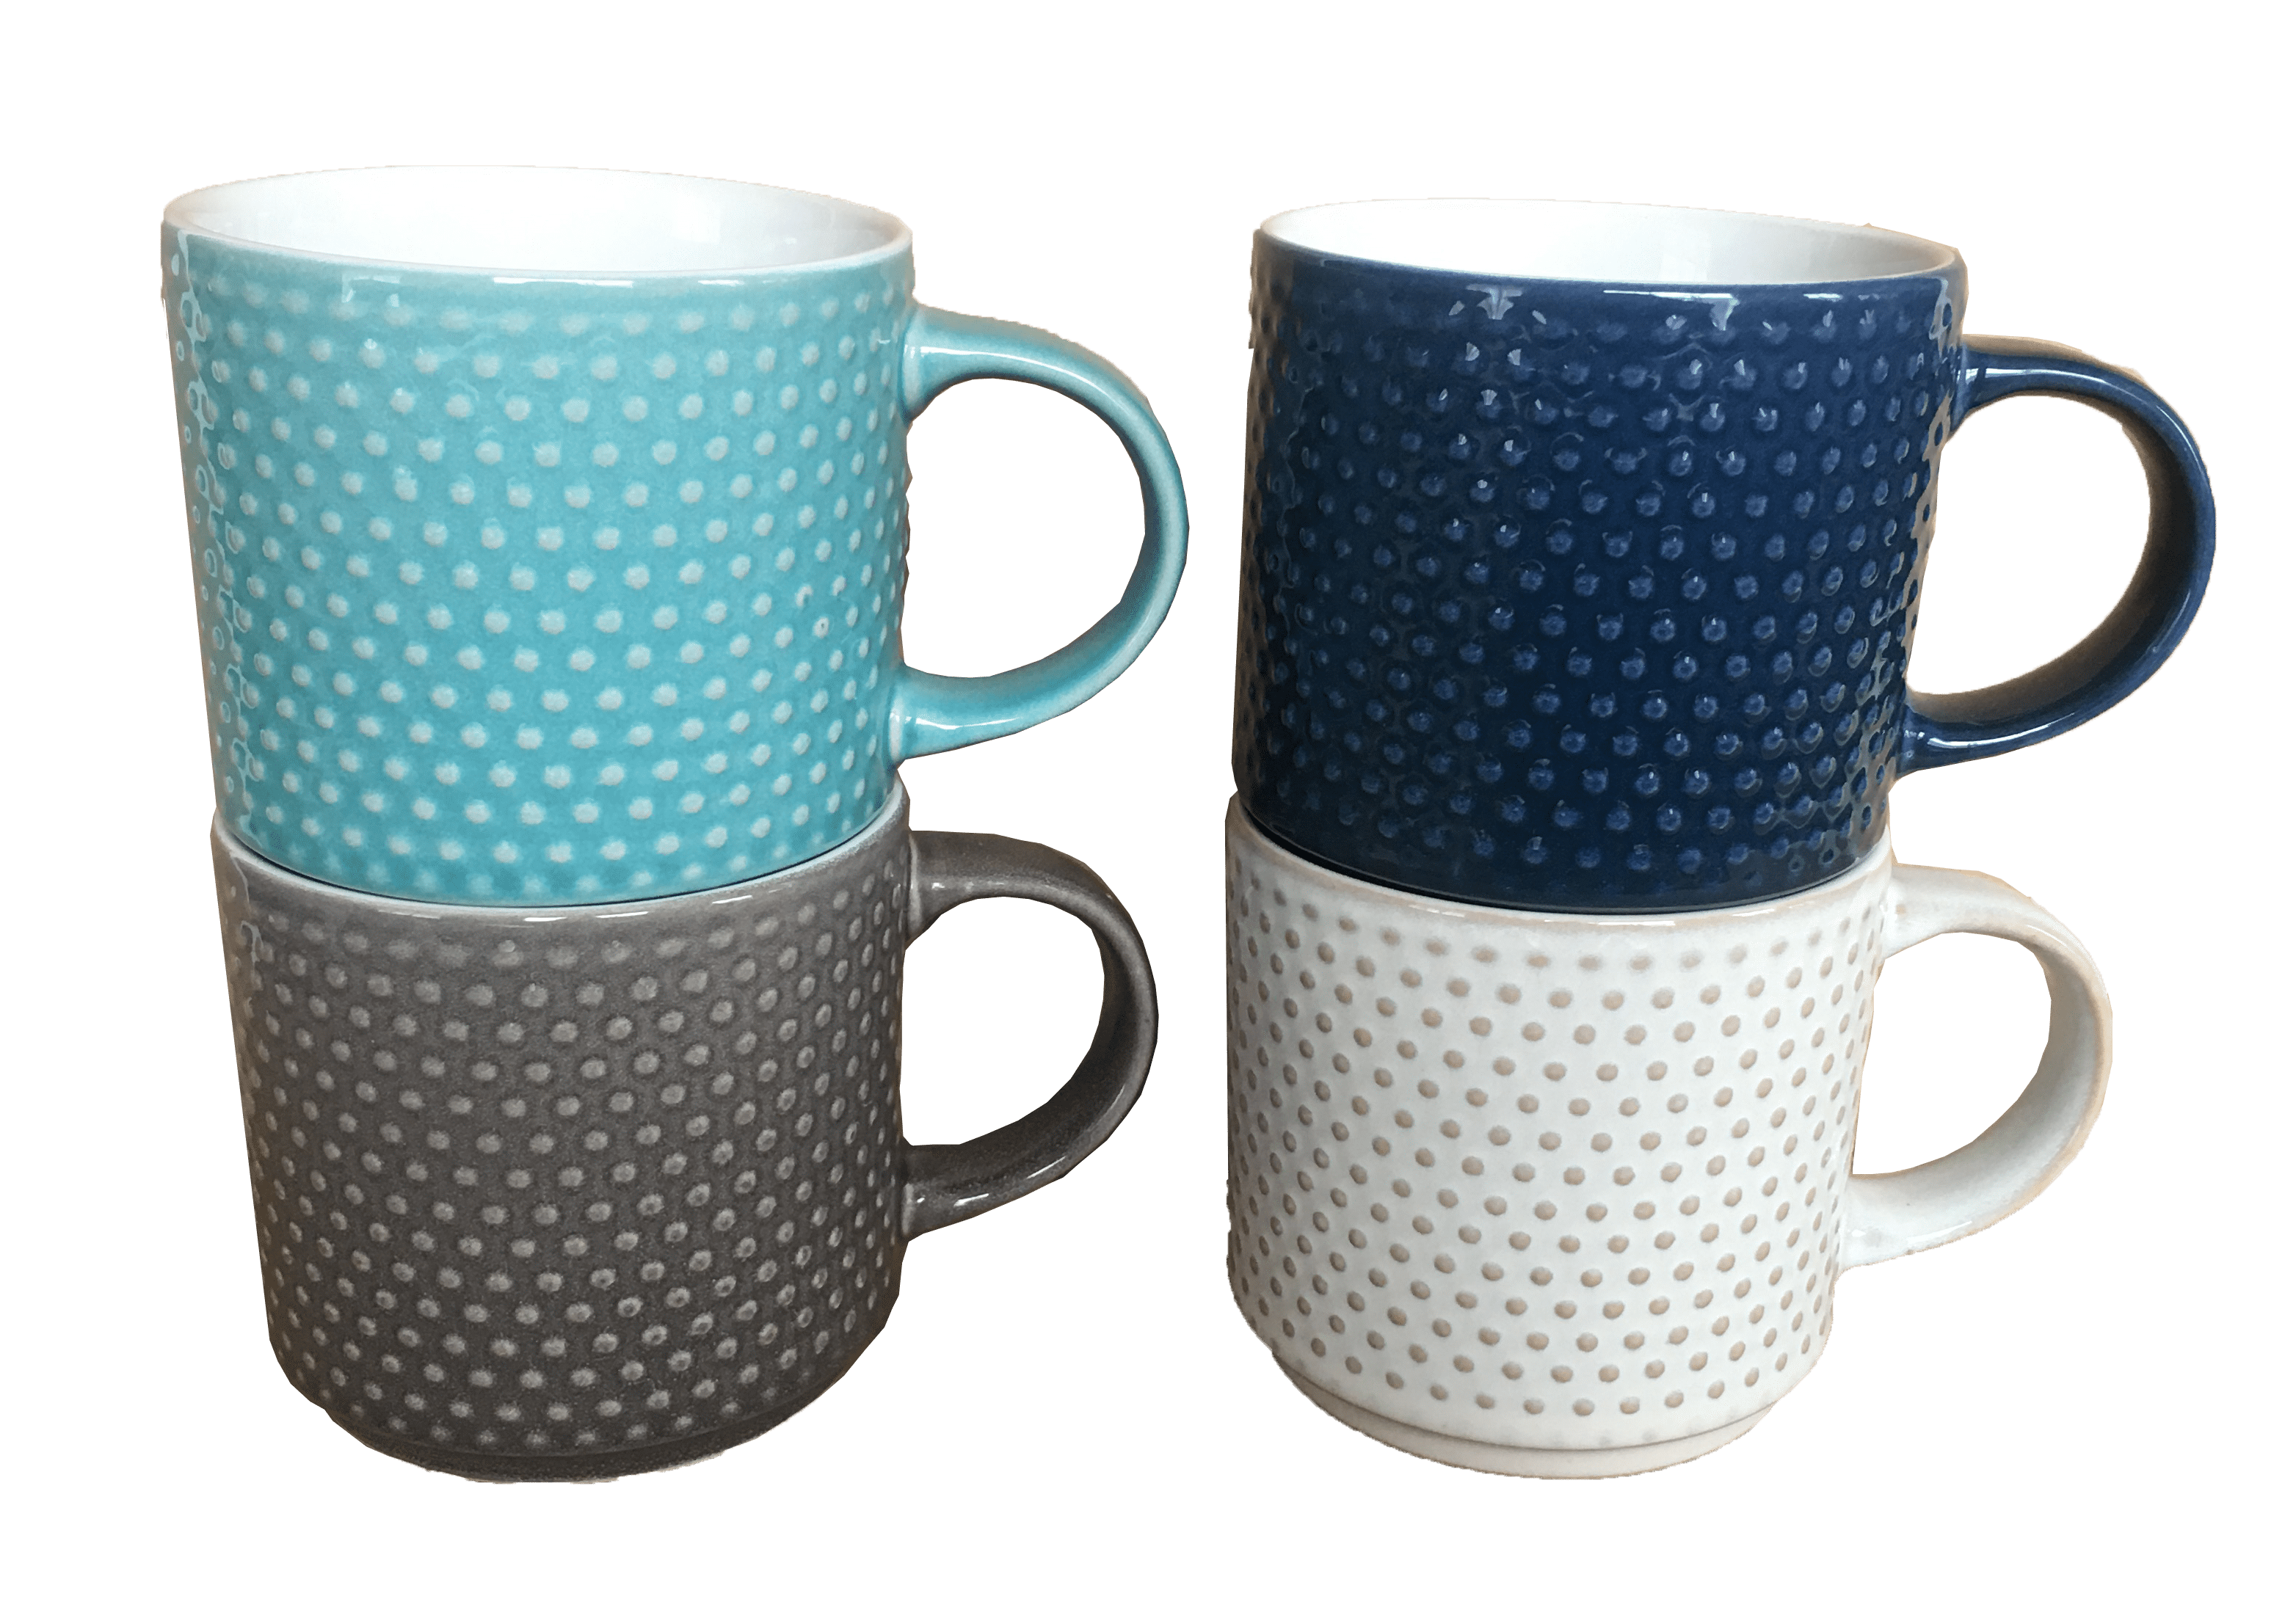 EYLINK mugs set aesthetic mug Best mom mug ever novelty mug coffee mugs for  women large mugs with handle (Body blue)